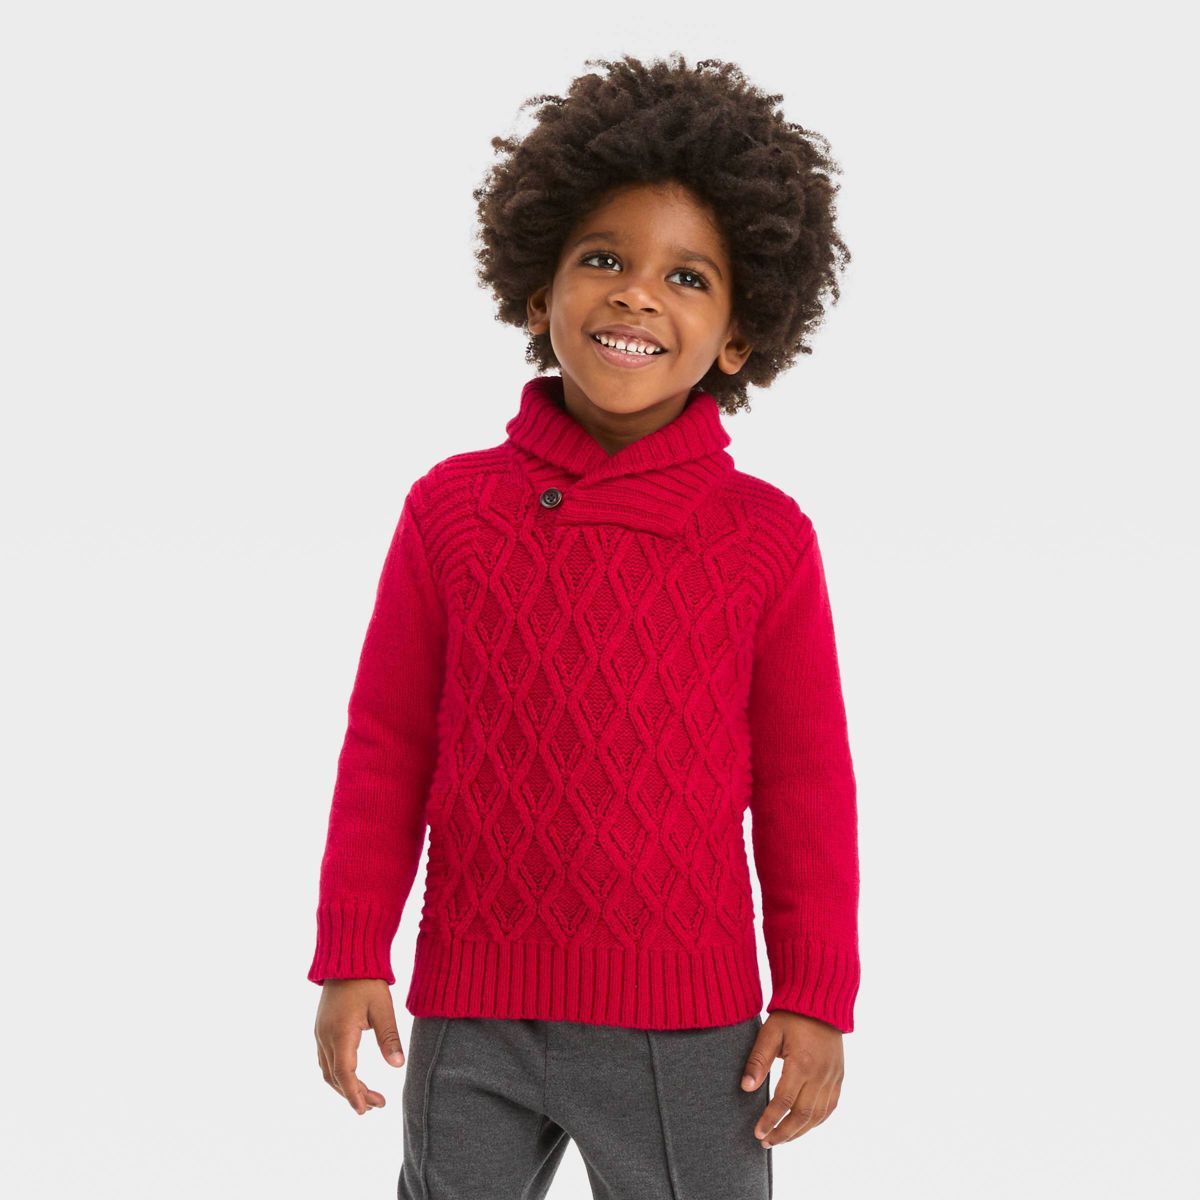 Toddler Boys' Shawl Collar Sweater - Cat & Jack™ Red | Target